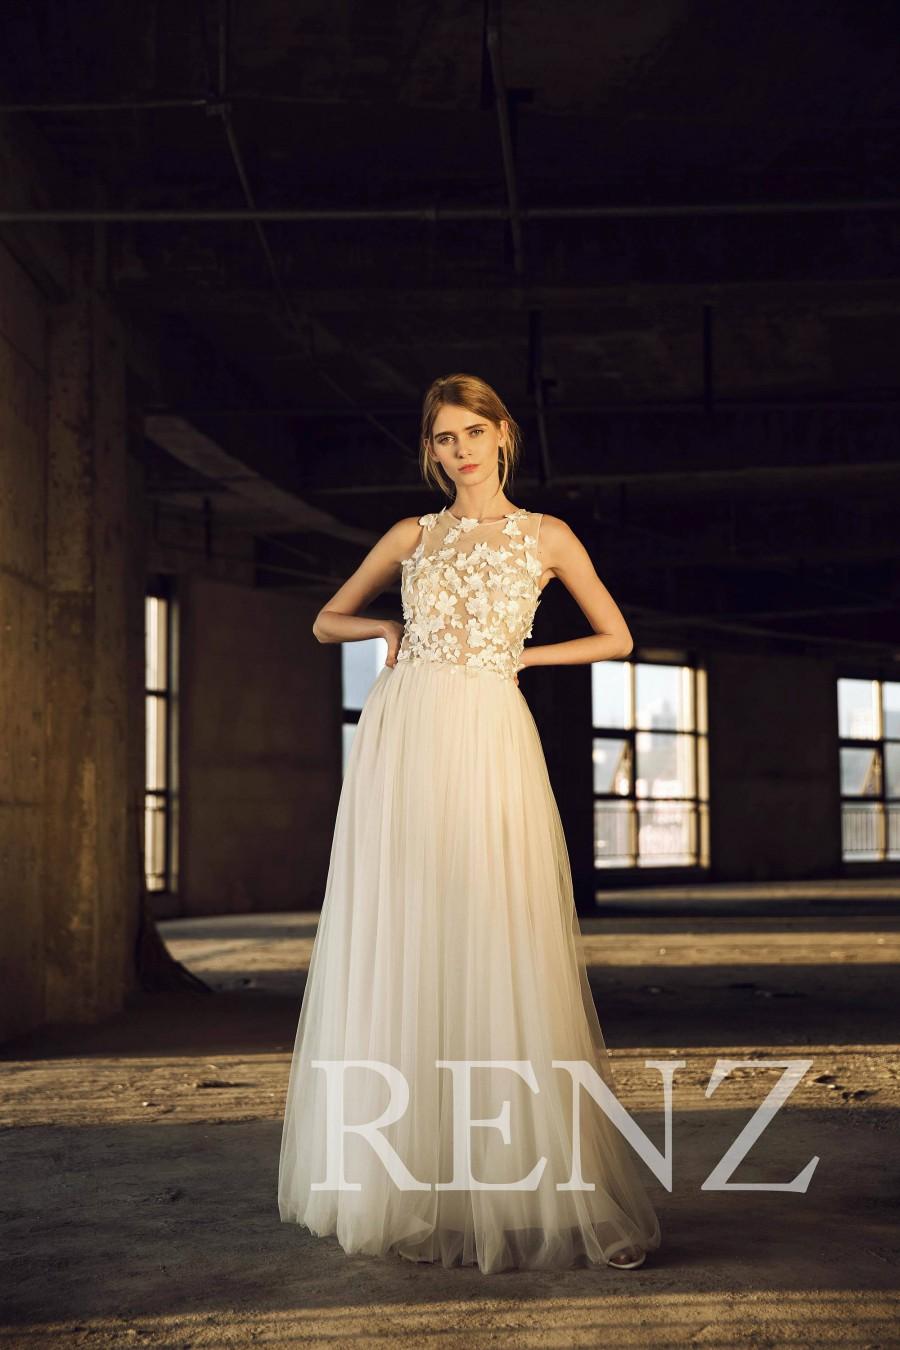 زفاف - Wedding Dress Off White Tulle Bride Dress,Lace Applique Bridal Dress,Sleeveless Lace Evening Dress,Illusion Boat Neck Long Maxi Dress(LW159)